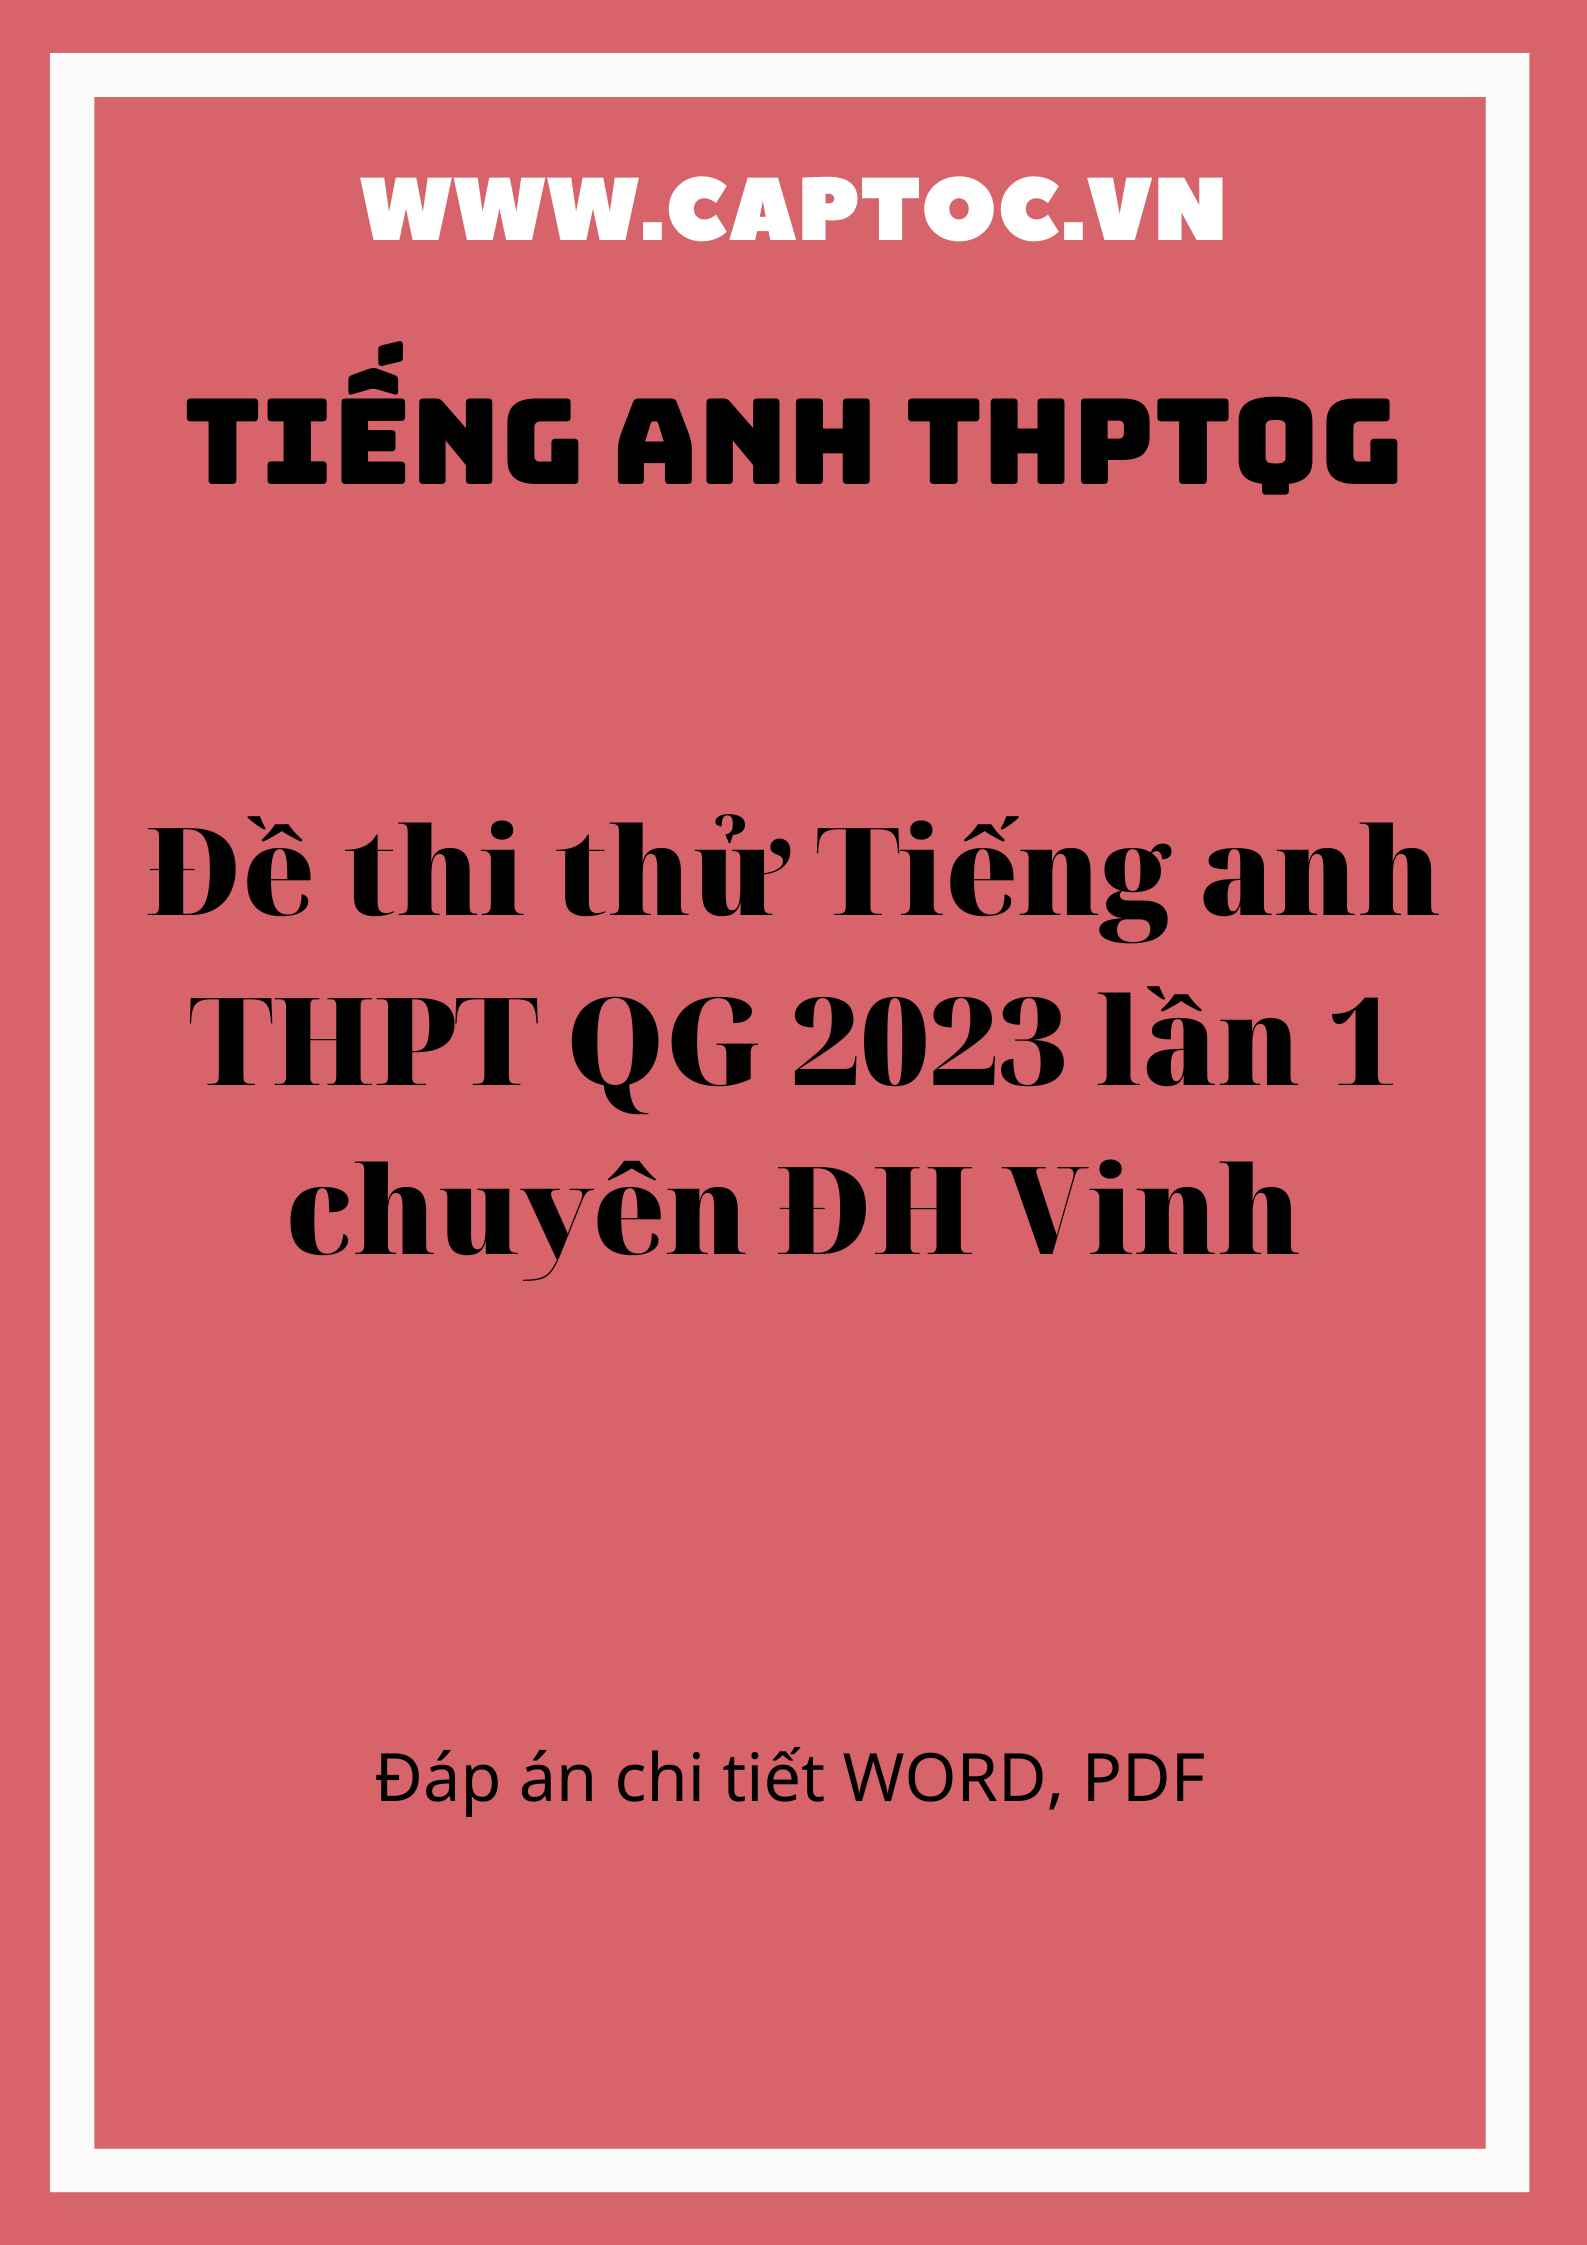 Đề thi thử Tiếng anh THPT QG 2023 lần 1 chuyên ĐH Vinh